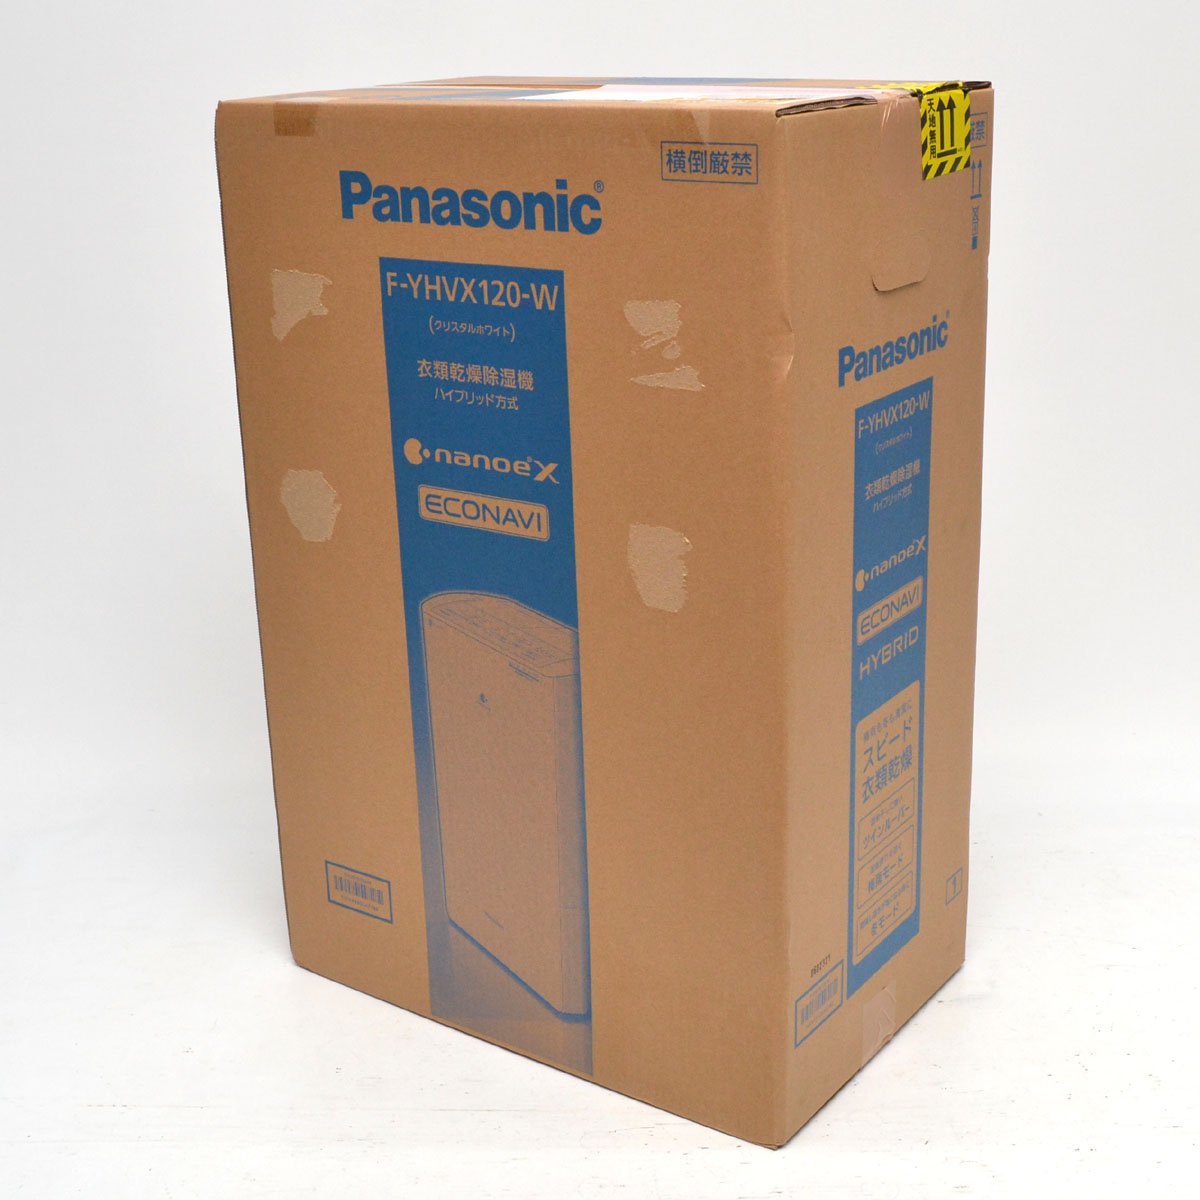 【未開封品】Panasonic パナソニック 衣類乾燥除湿機 F-YHVX120-W ハイブリッド方式 ～25畳 ホワイト エコナビ＆ナノイーX搭載 [S206751]_画像1